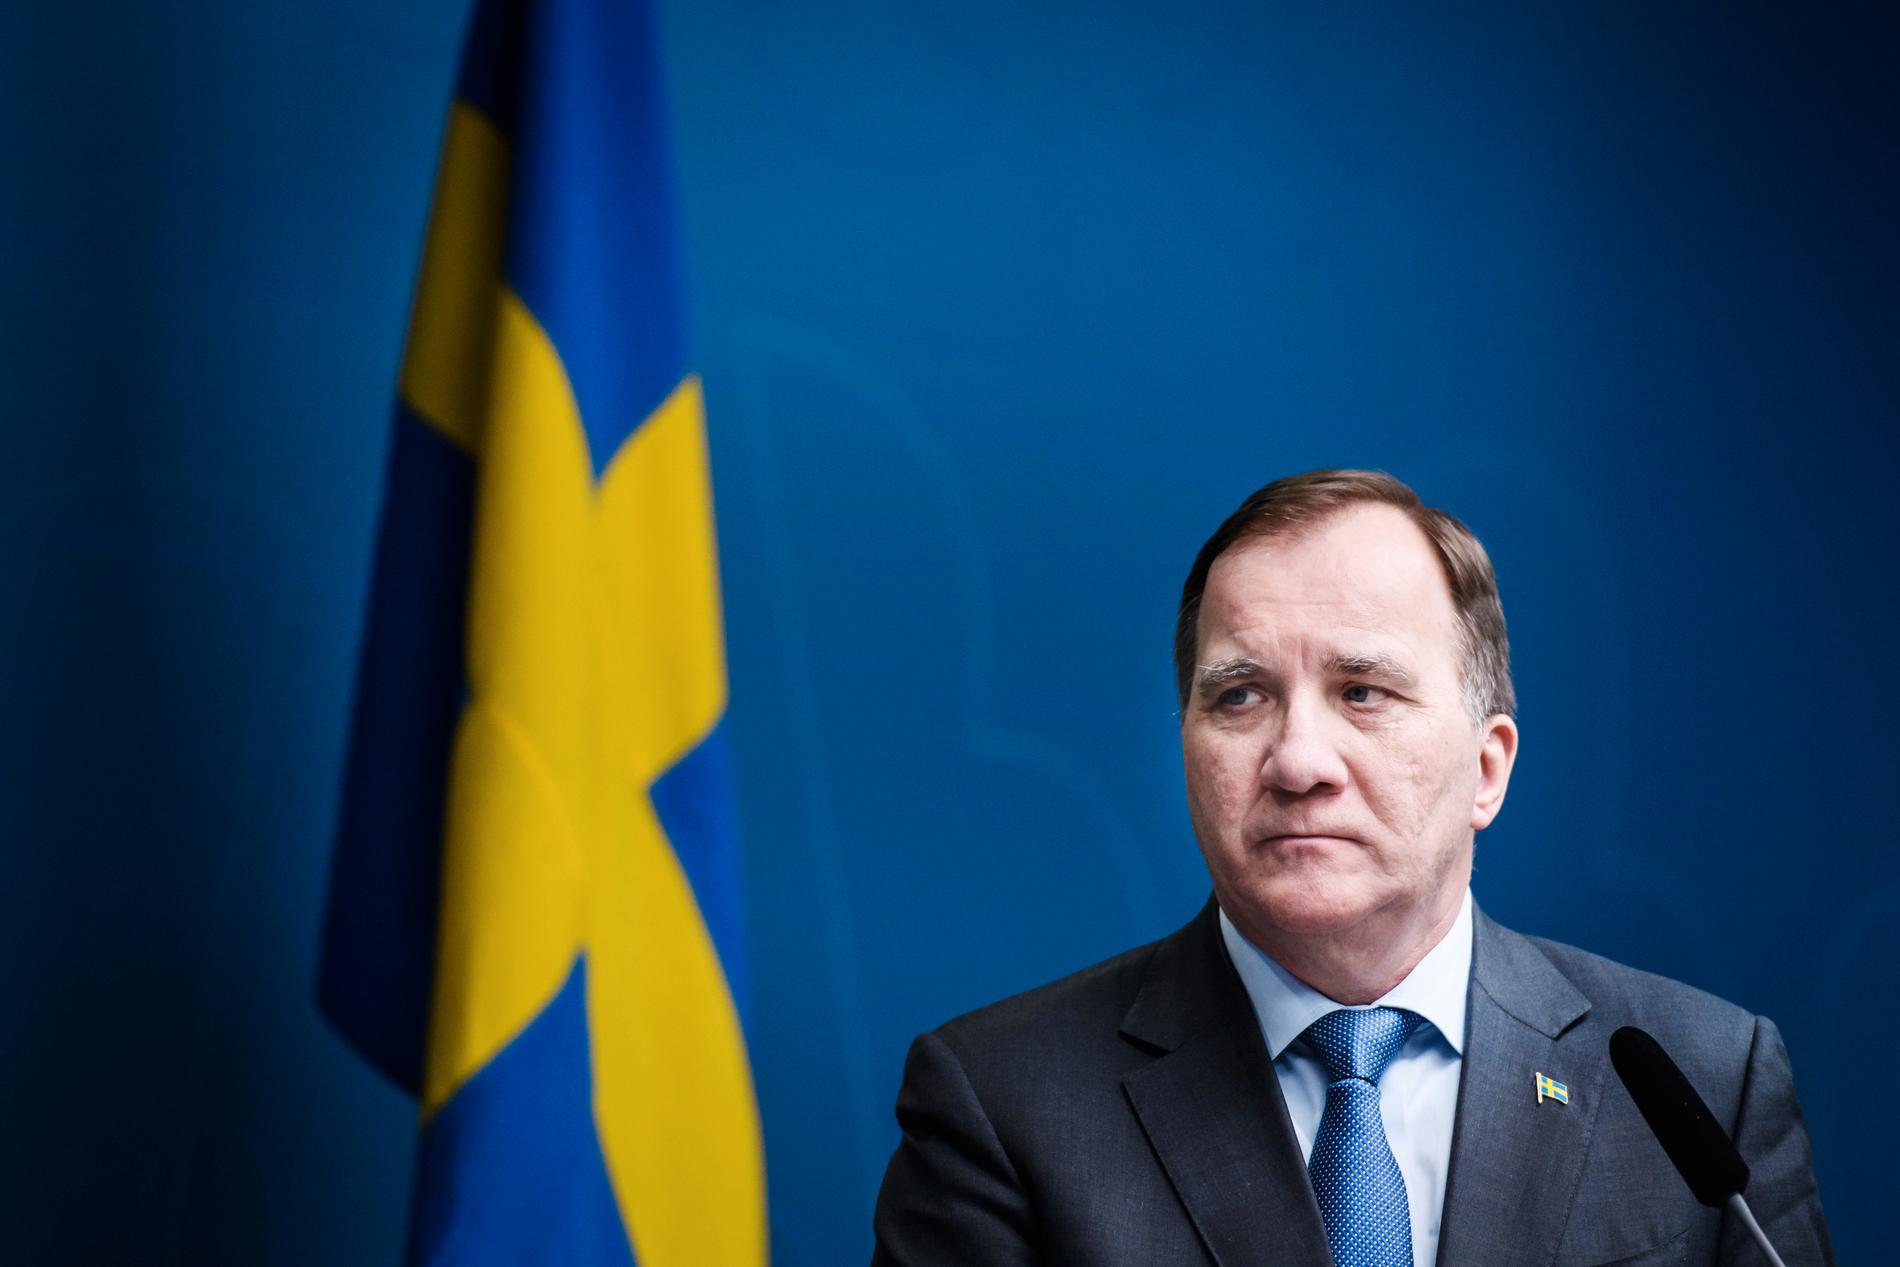 Statsminister Stefan Löfven säger att Sveriges beredskap inte har varit tillräckligt bra.